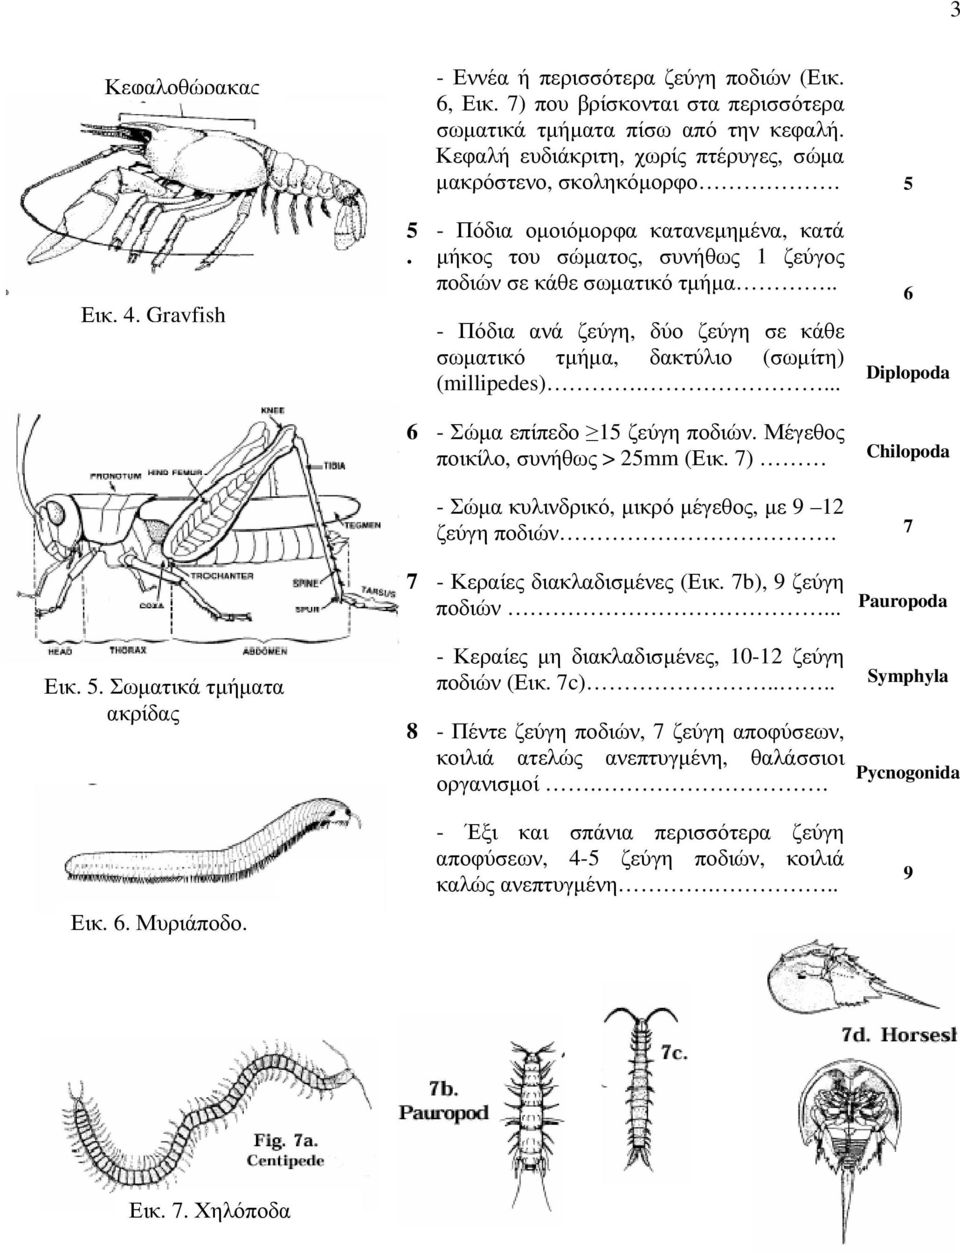 . - Πόδια ανά ζεύγη, δύο ζεύγη σε κάθε σωματικό τμήμα, δακτύλιο (σωμίτη) (millipedes).... 6 Diplopoda 6 - Σώμα επίπεδο 15 ζεύγη ποδιών. Μέγεθος ποικίλο, συνήθως > 25mm (Εικ.